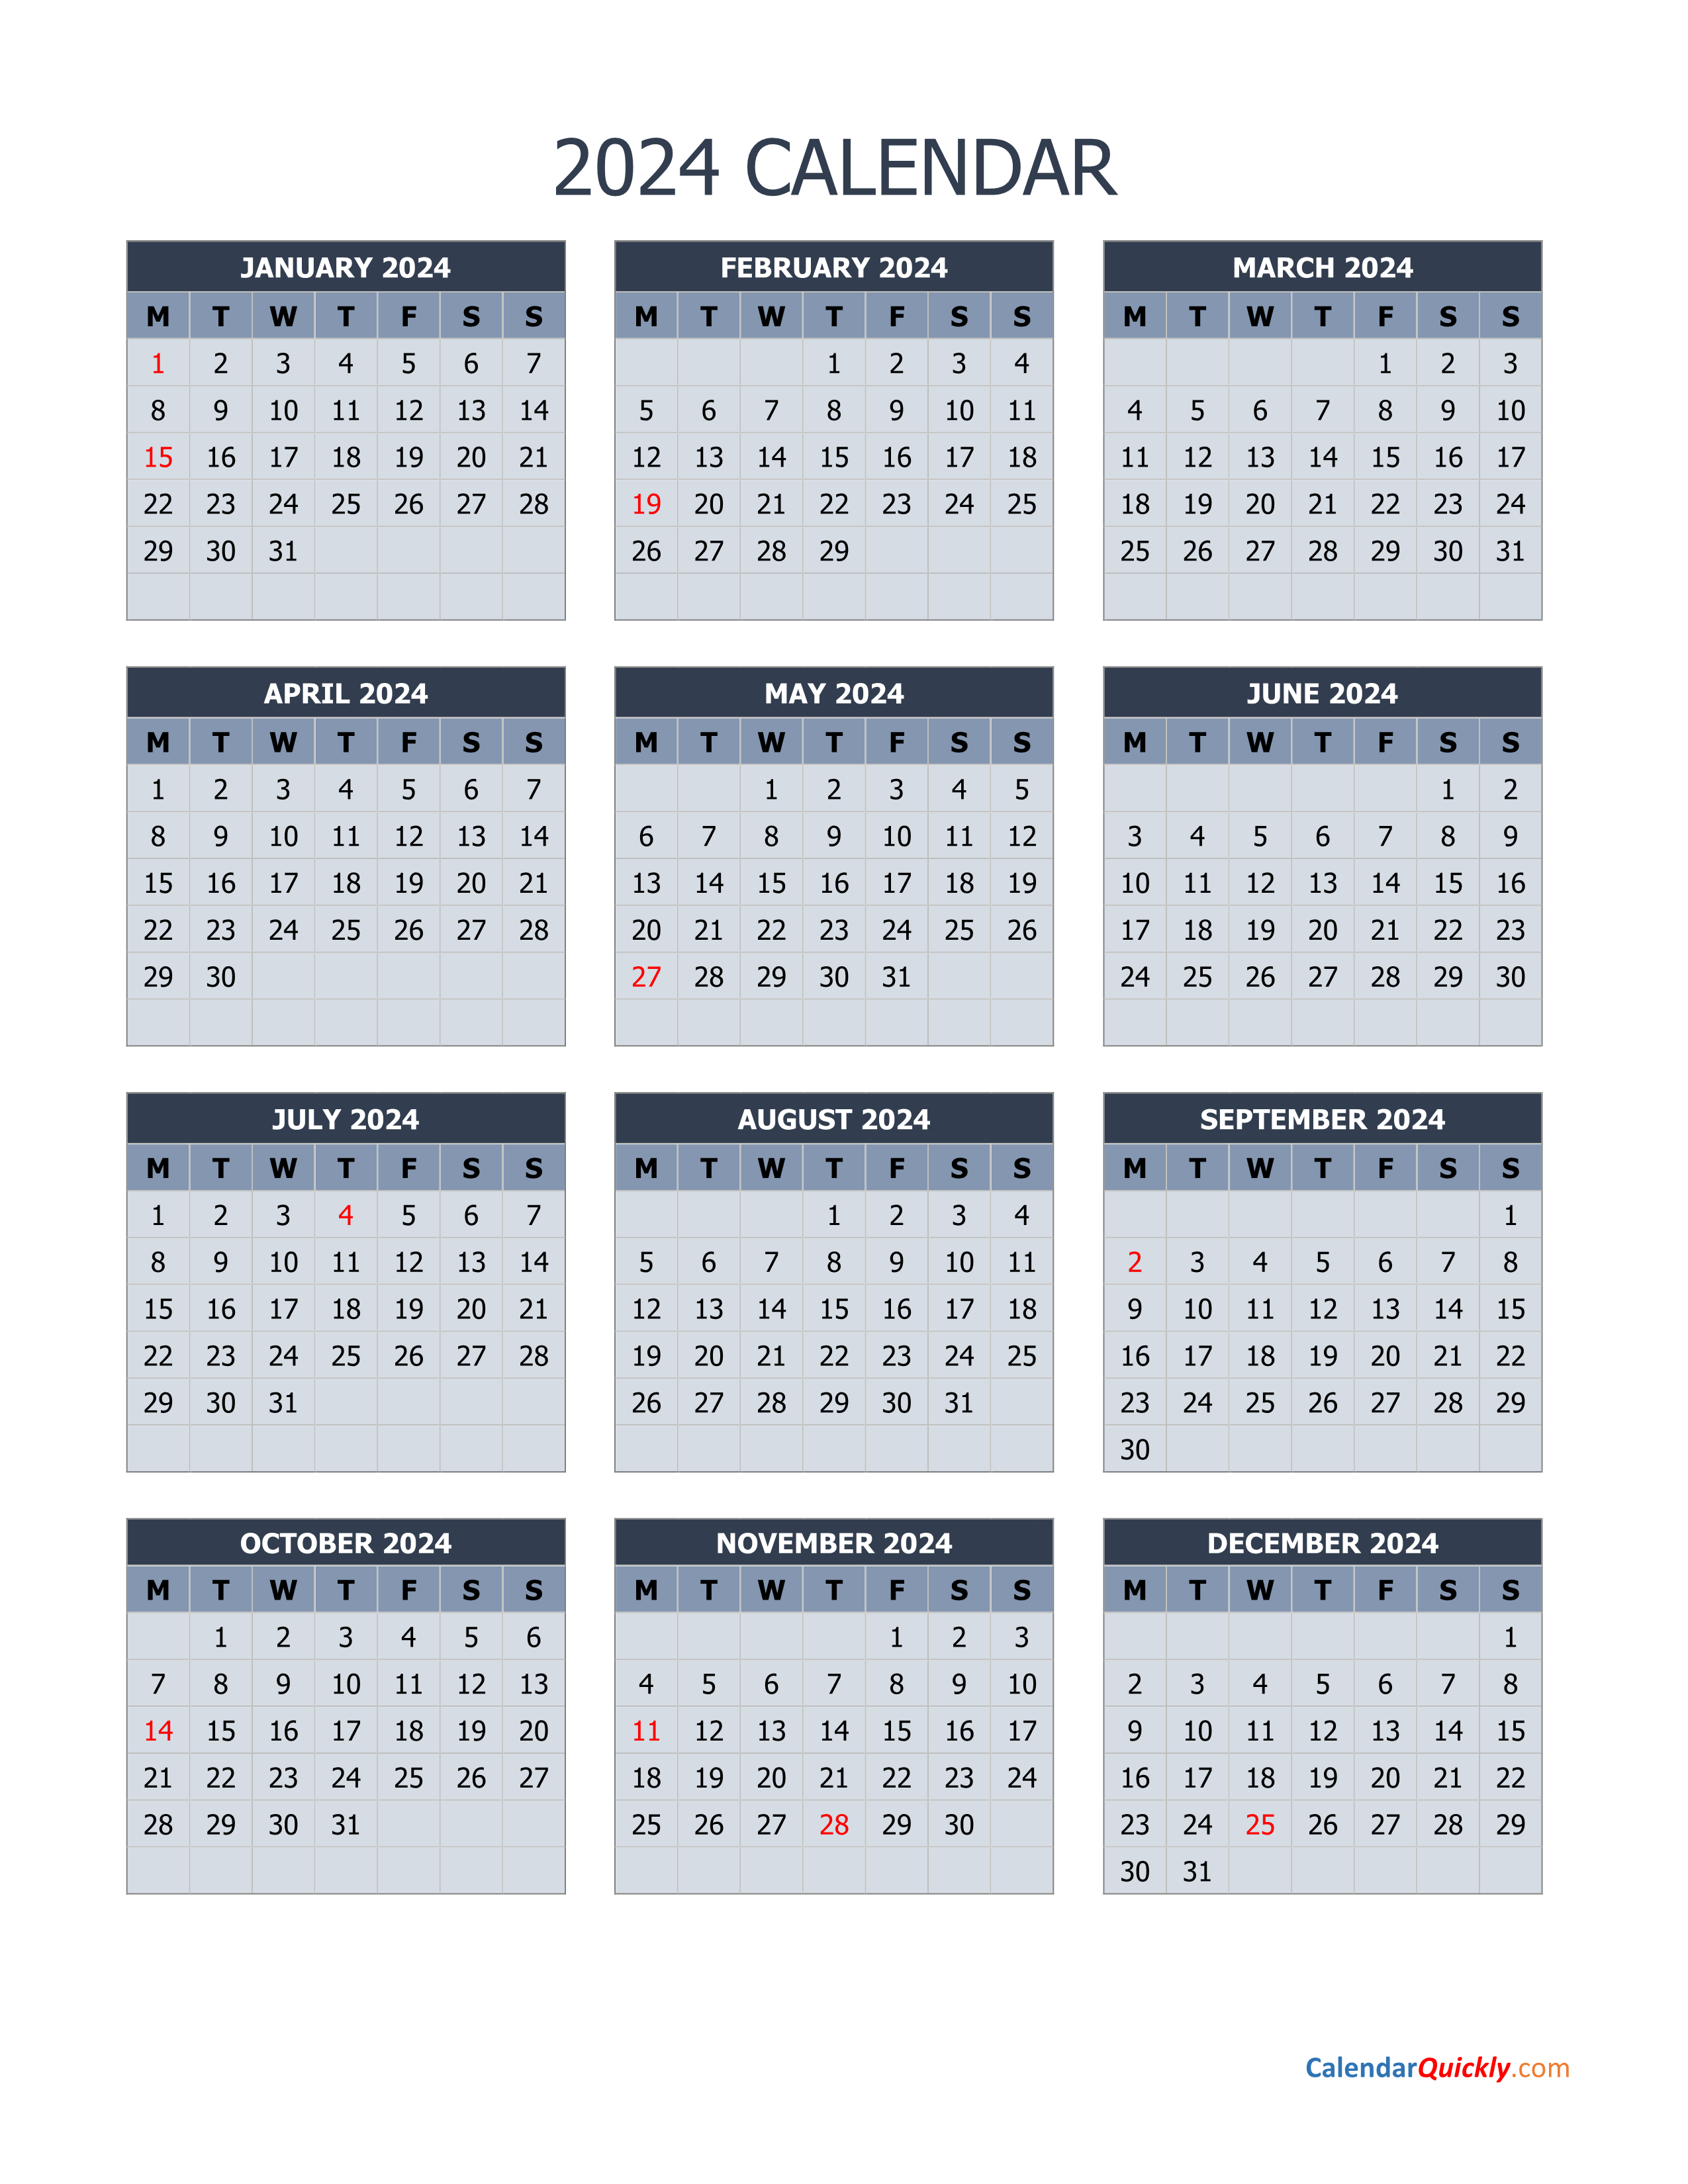 monday-2024-calendar-vertical-calendar-quickly